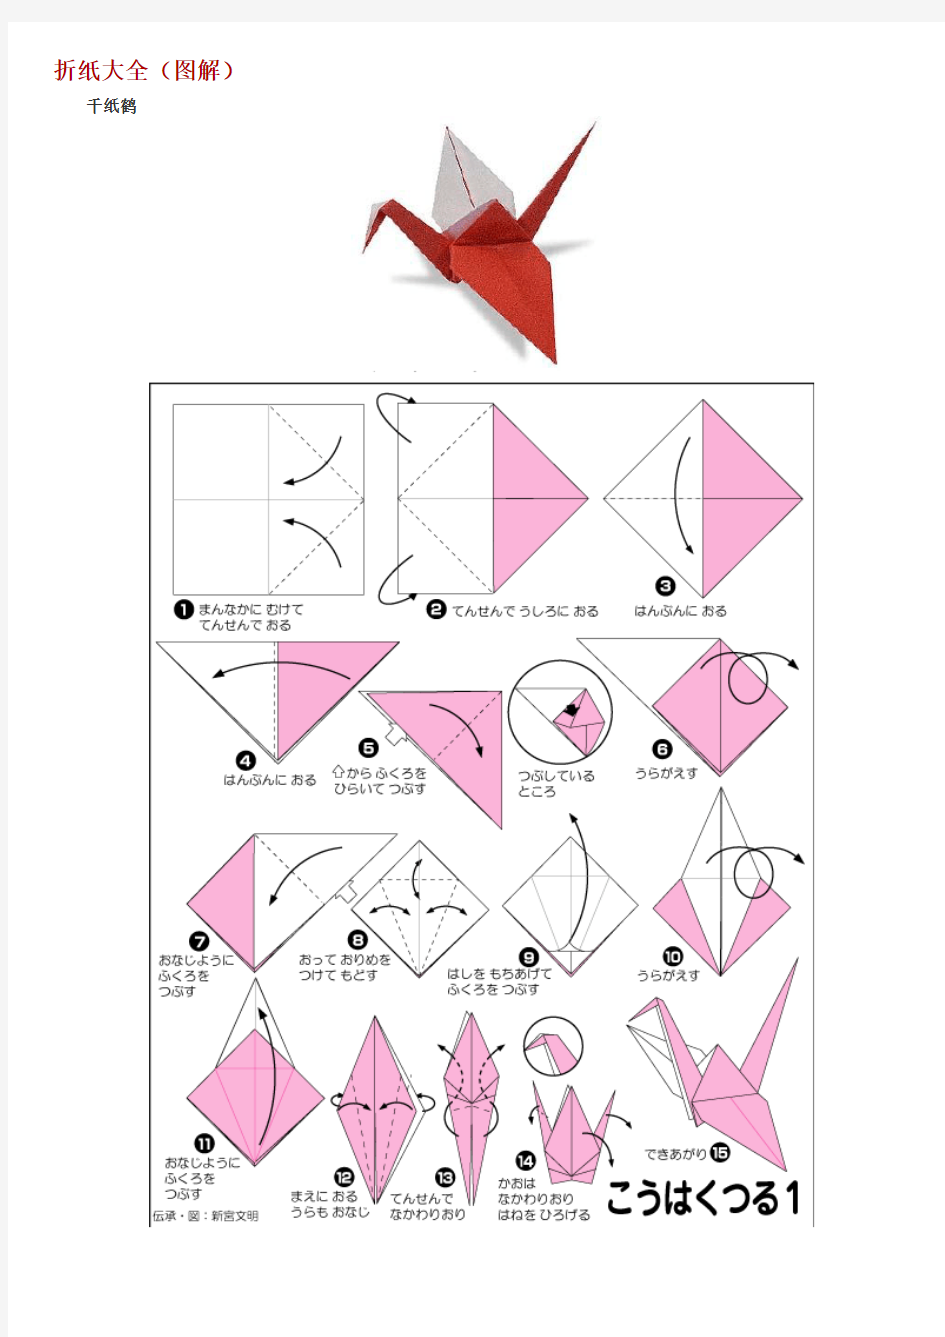 折纸大全(图解)-动物和植物